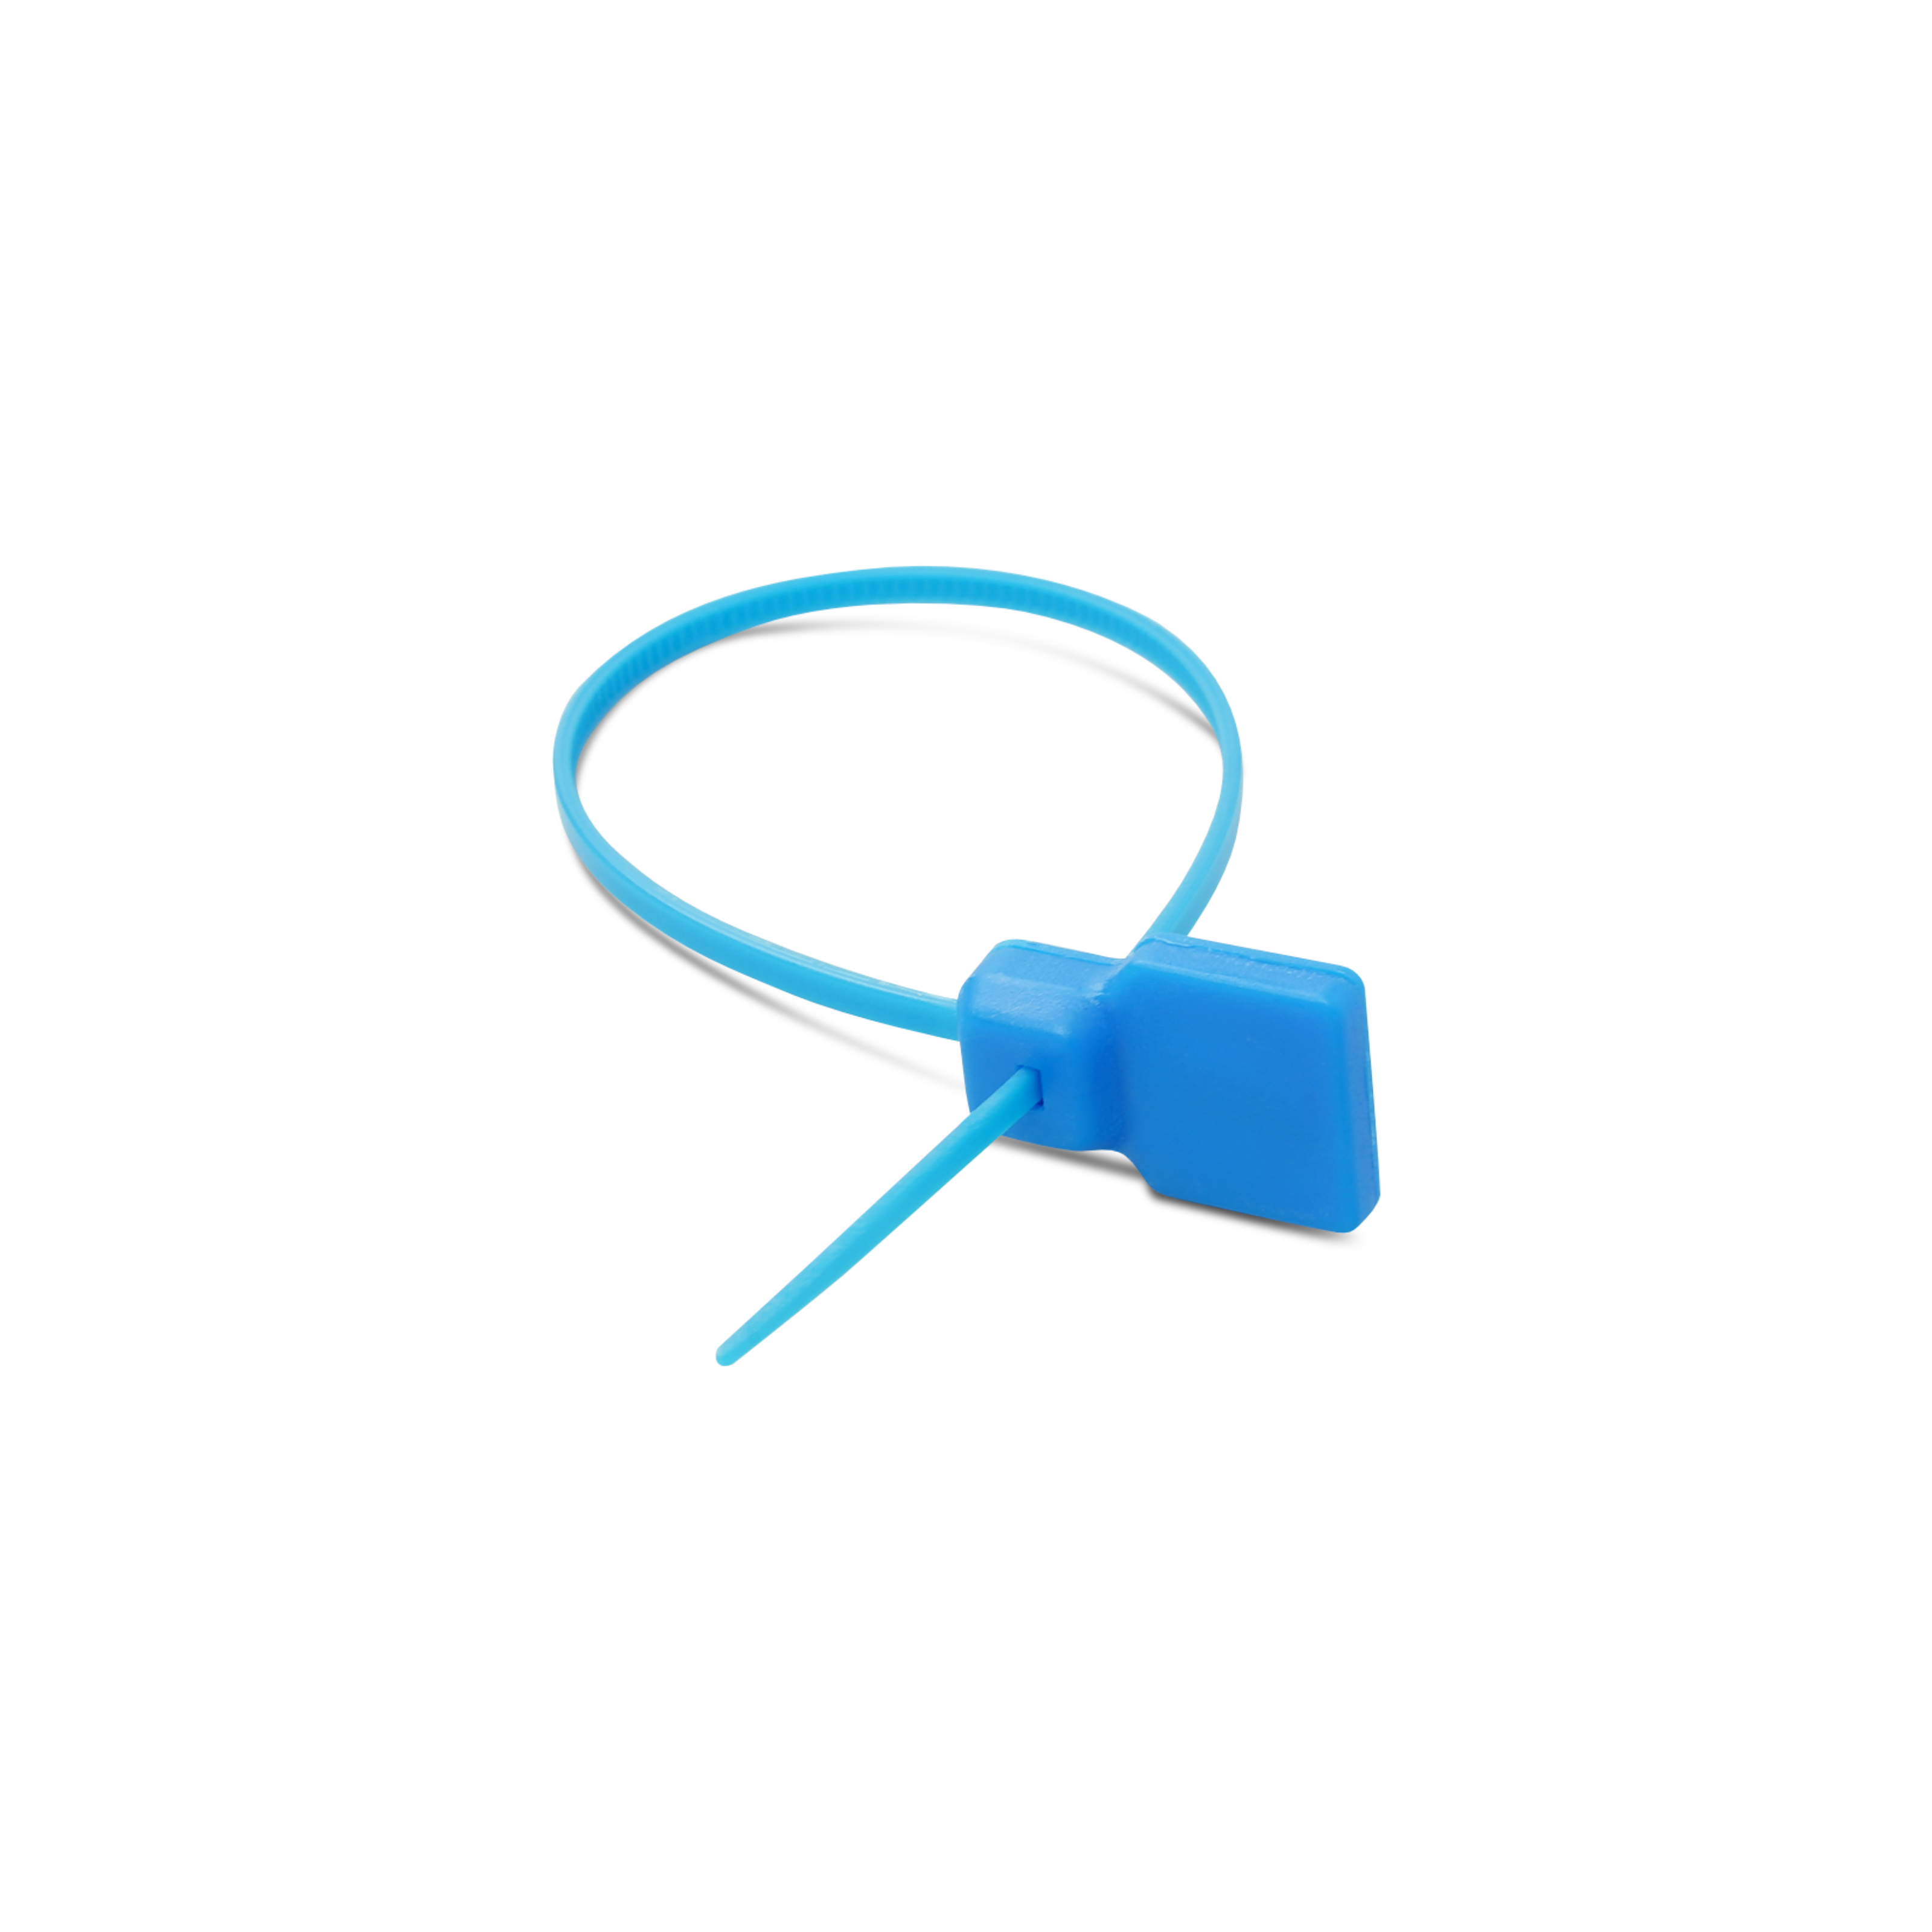 Verbundener NFC Kabelbinder aus PVC in blau